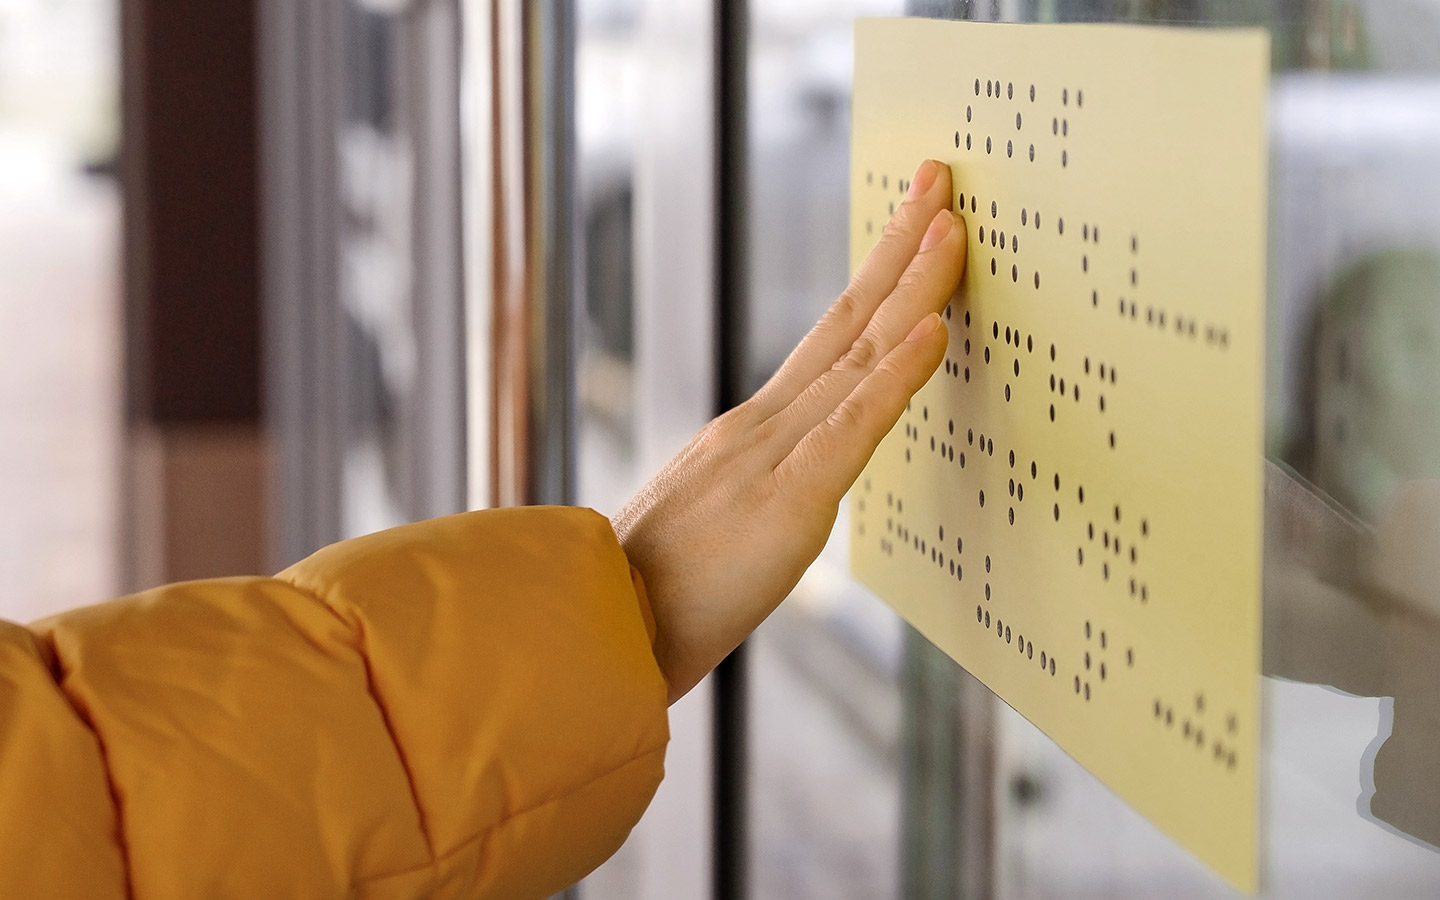 Foto: Eine Hand tastet einen Informationsaushang mit Brailleschrift ab.